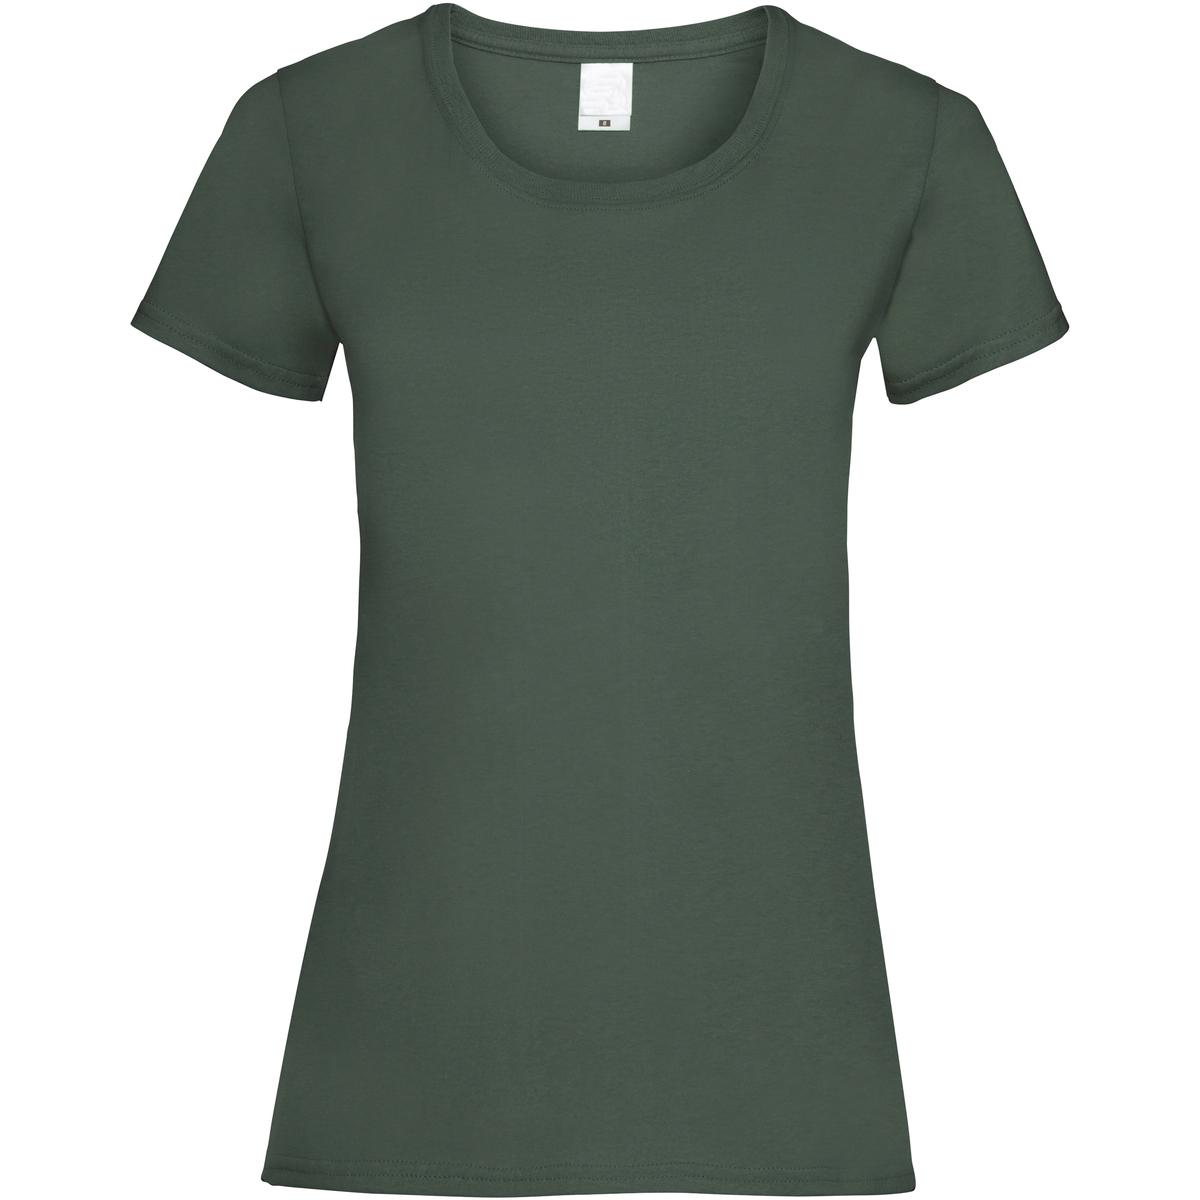 Vêtements Femme heart detail T-shirt 61372 Vert